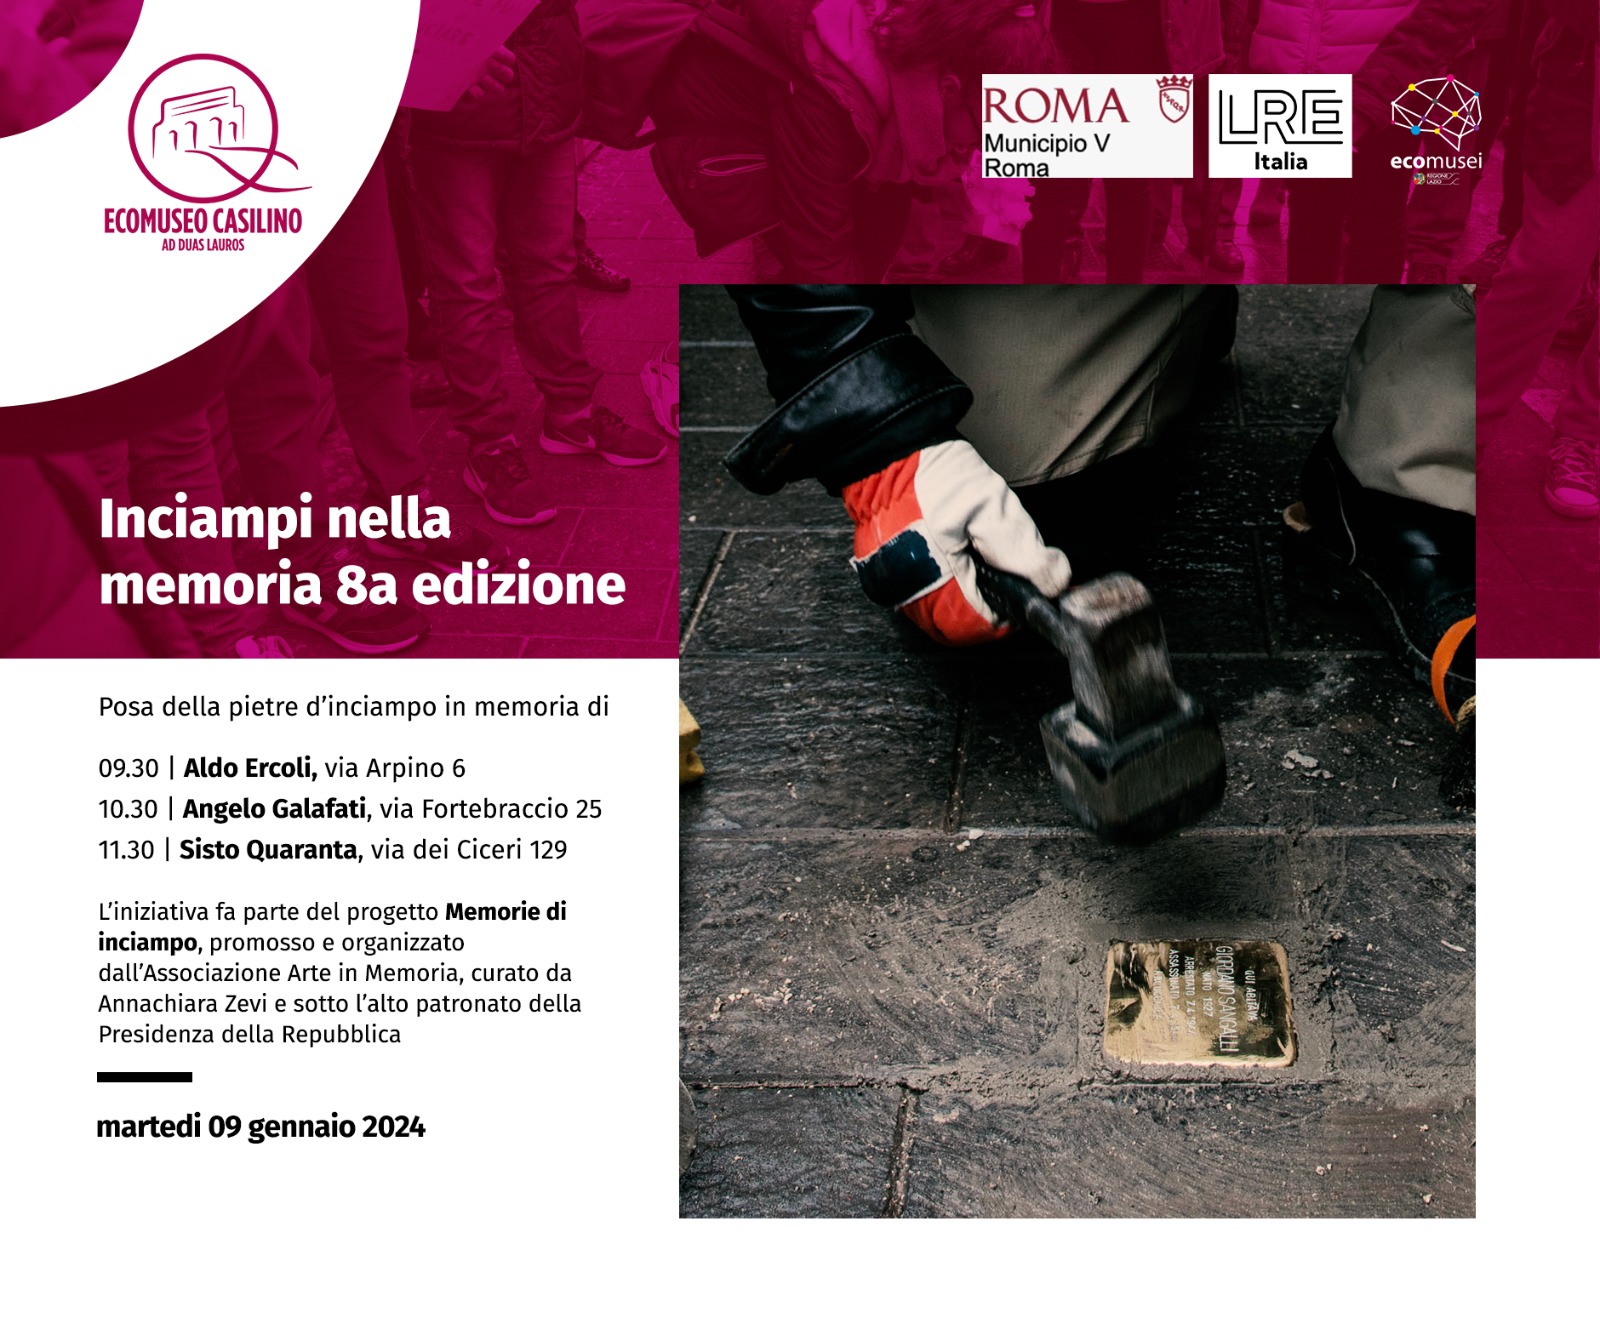 Installazione di 3 nuove pietre d’inciampo nel Municipio Roma V